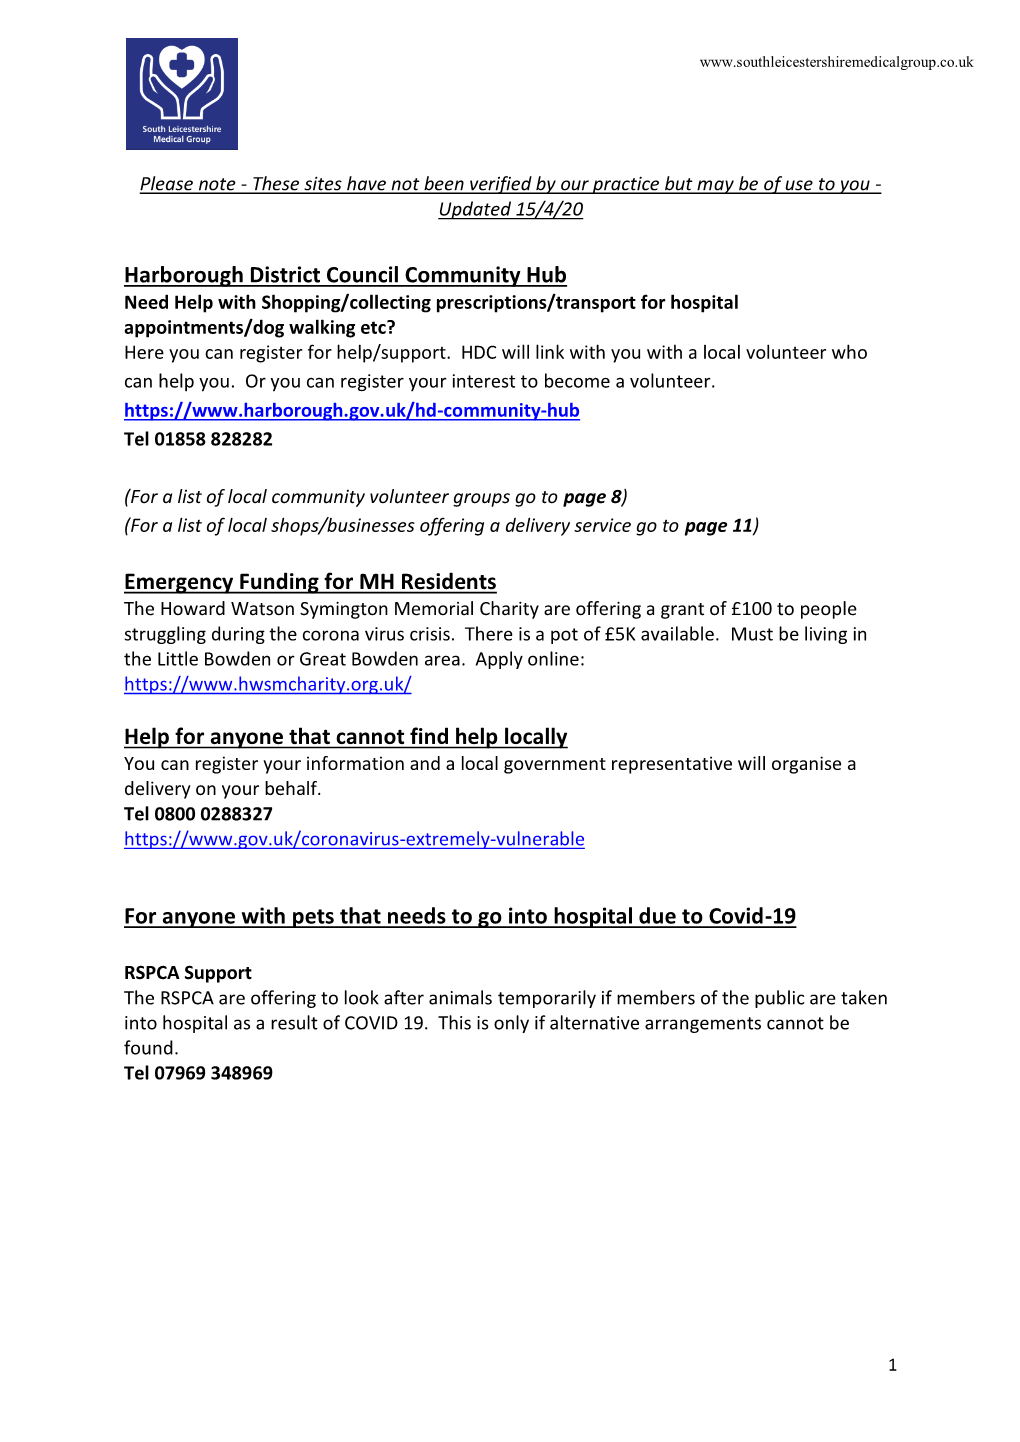 Harborough District Council Community